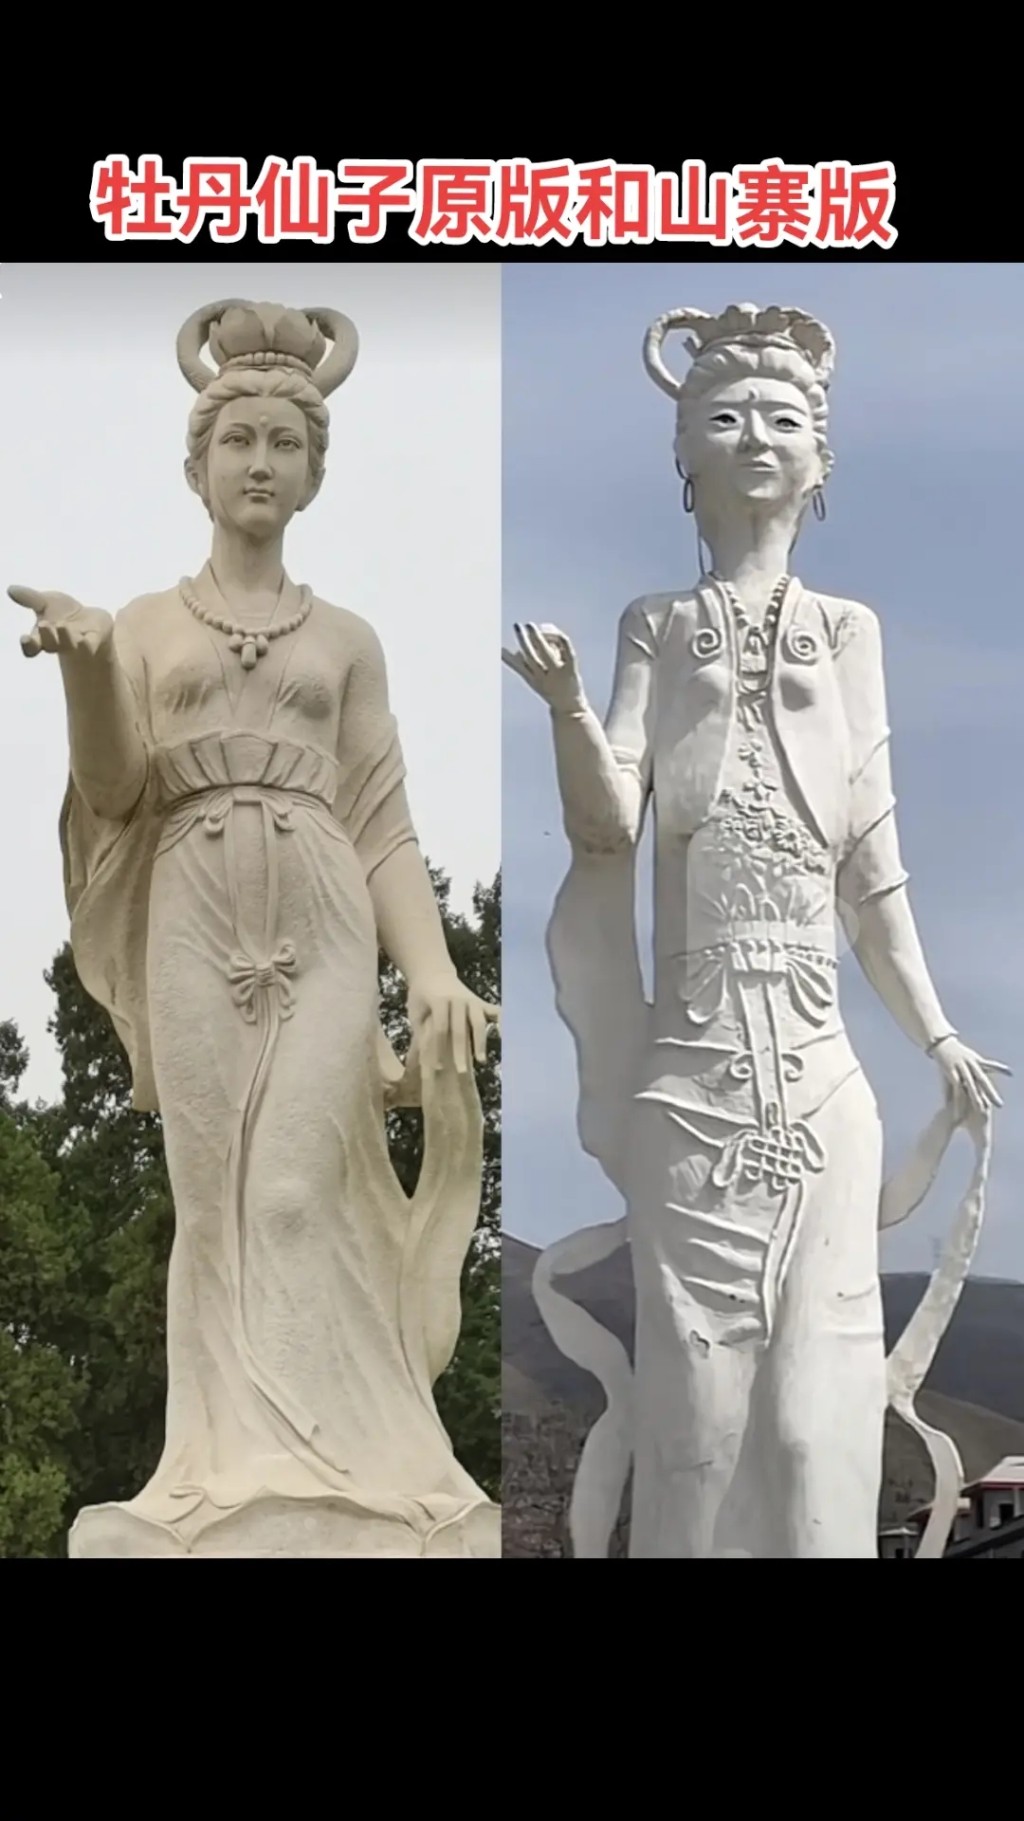 「牡丹仙子」原像和山寨版对比。